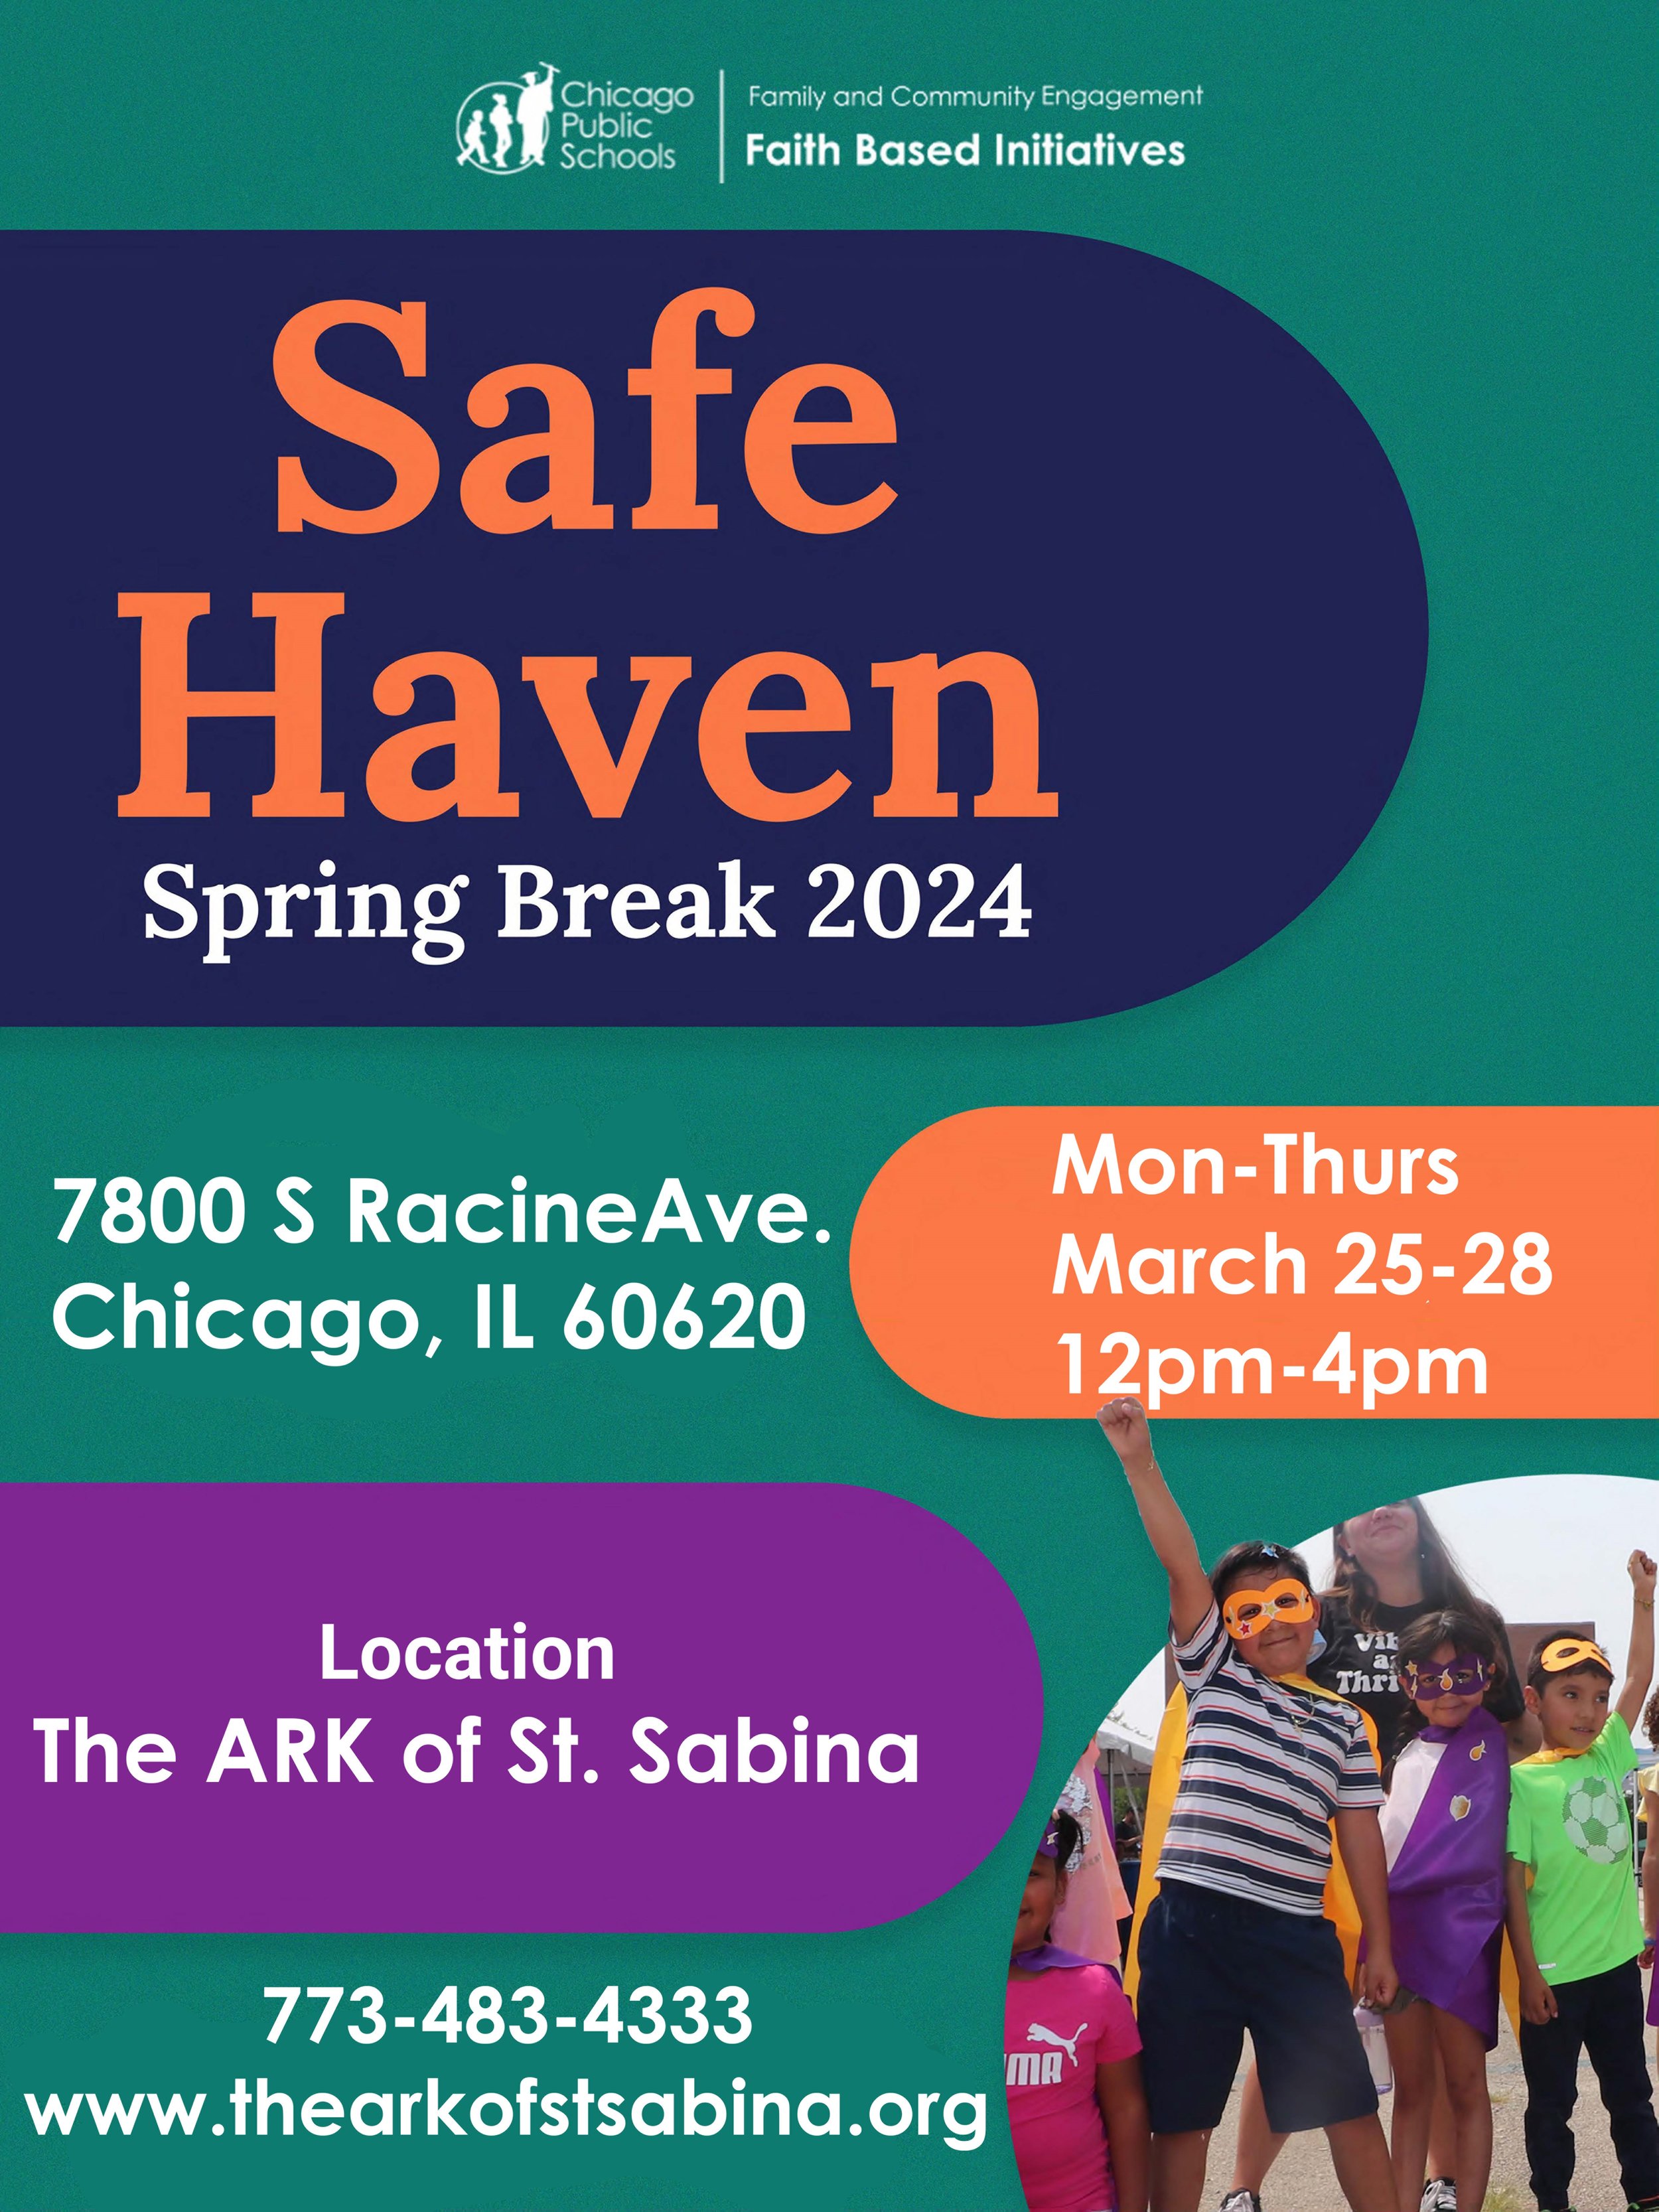 Safe Haven 2024 spring break flyer.jpeg